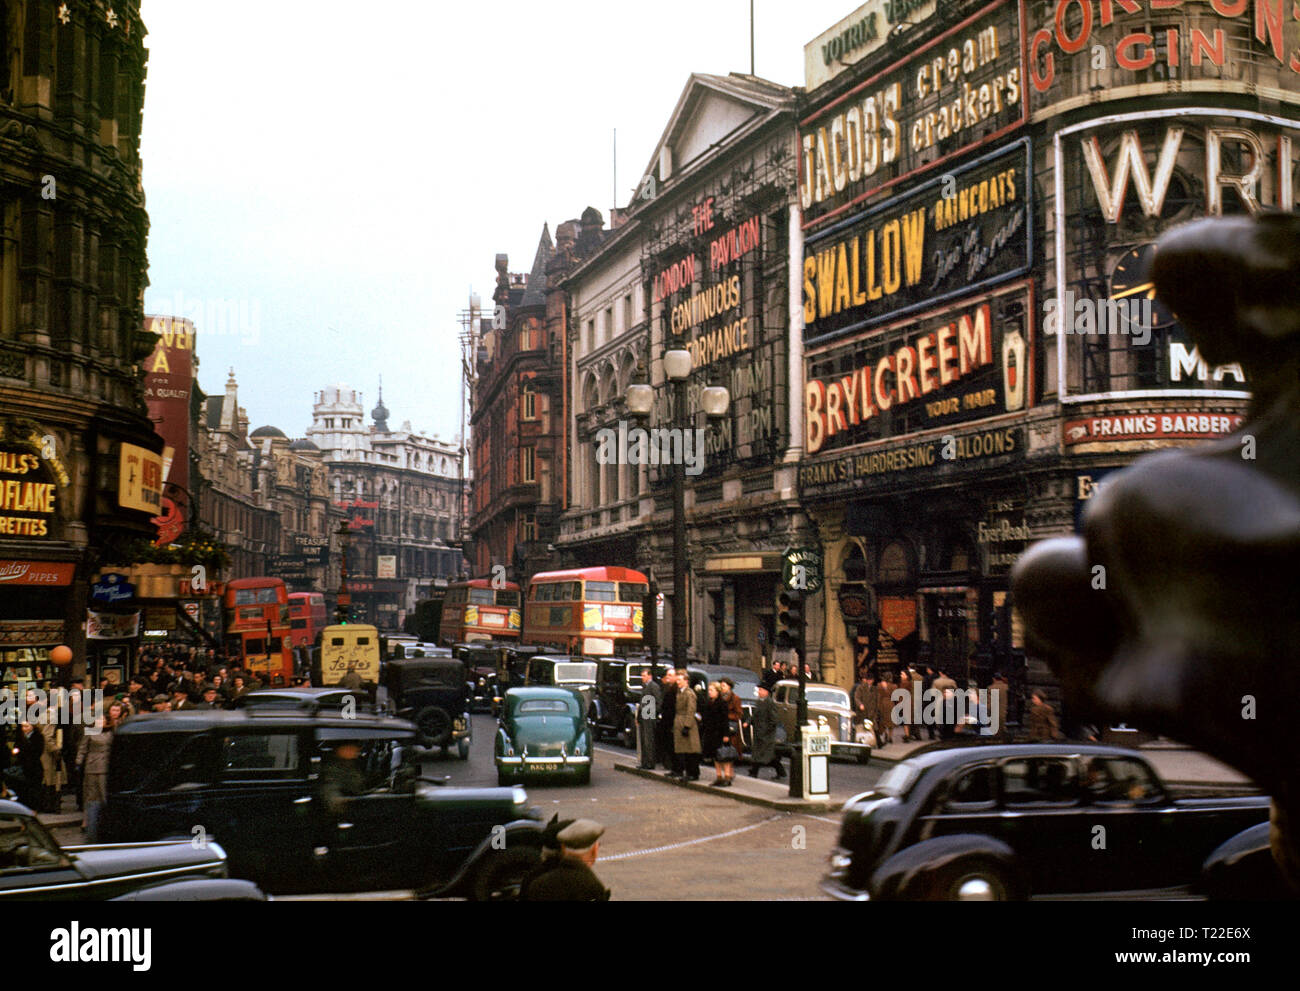 LONDRES PICCADILLY 40 SHAFTESBURY AVENUE ARCHIVE 1940 image couleur ancienne de Shaftesbury Avenue occupée par les taxis traditionnels noirs et les bus rouges de Londres vus de Piccadilly Circus, Londres vers 1940 Banque D'Images